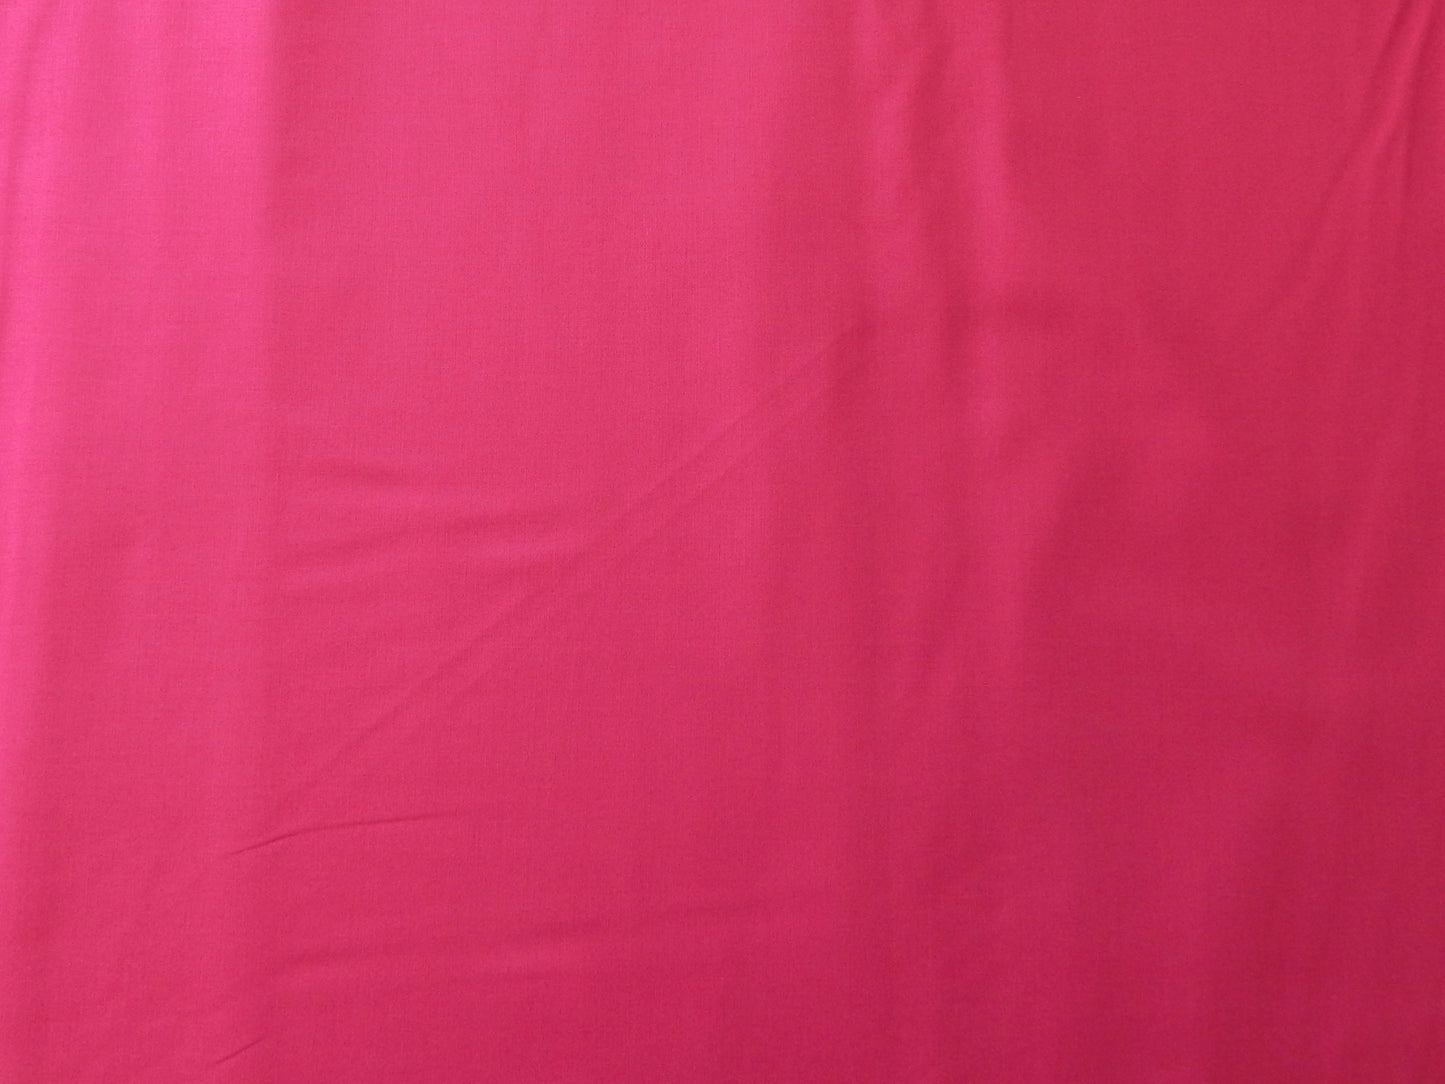 paintbrush studios rosebud pink quilting fabric